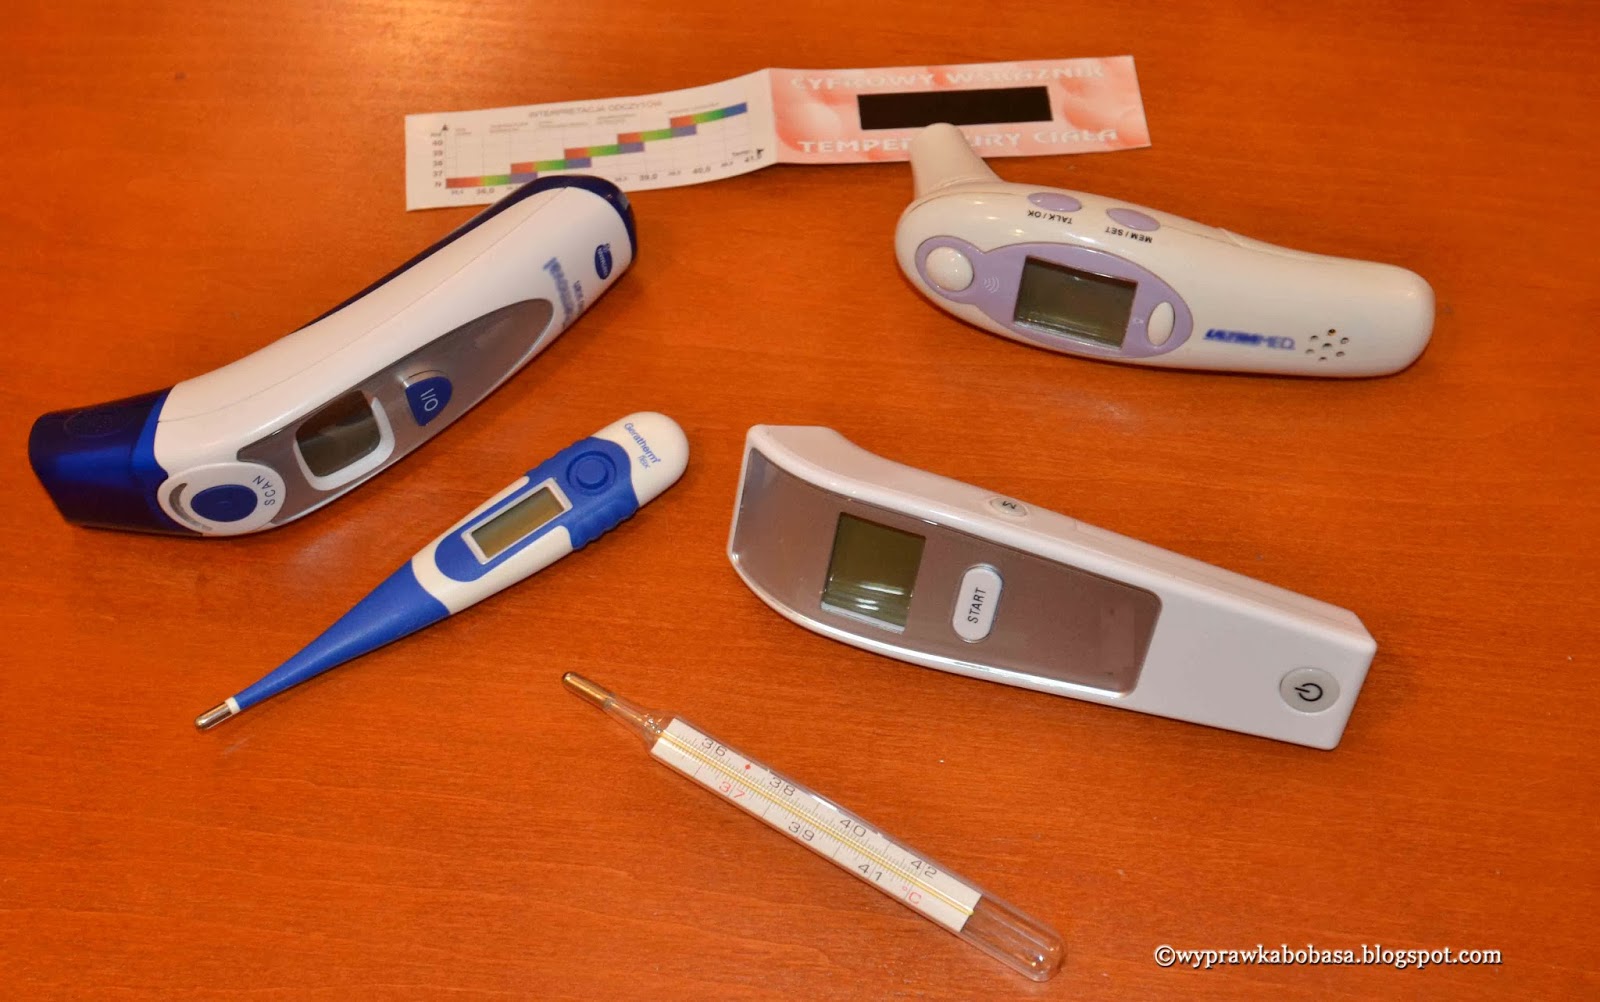 Confine mint strap Wyprawka Bobasa: Jaki termometr do mierzenia gorączki u dziecka?